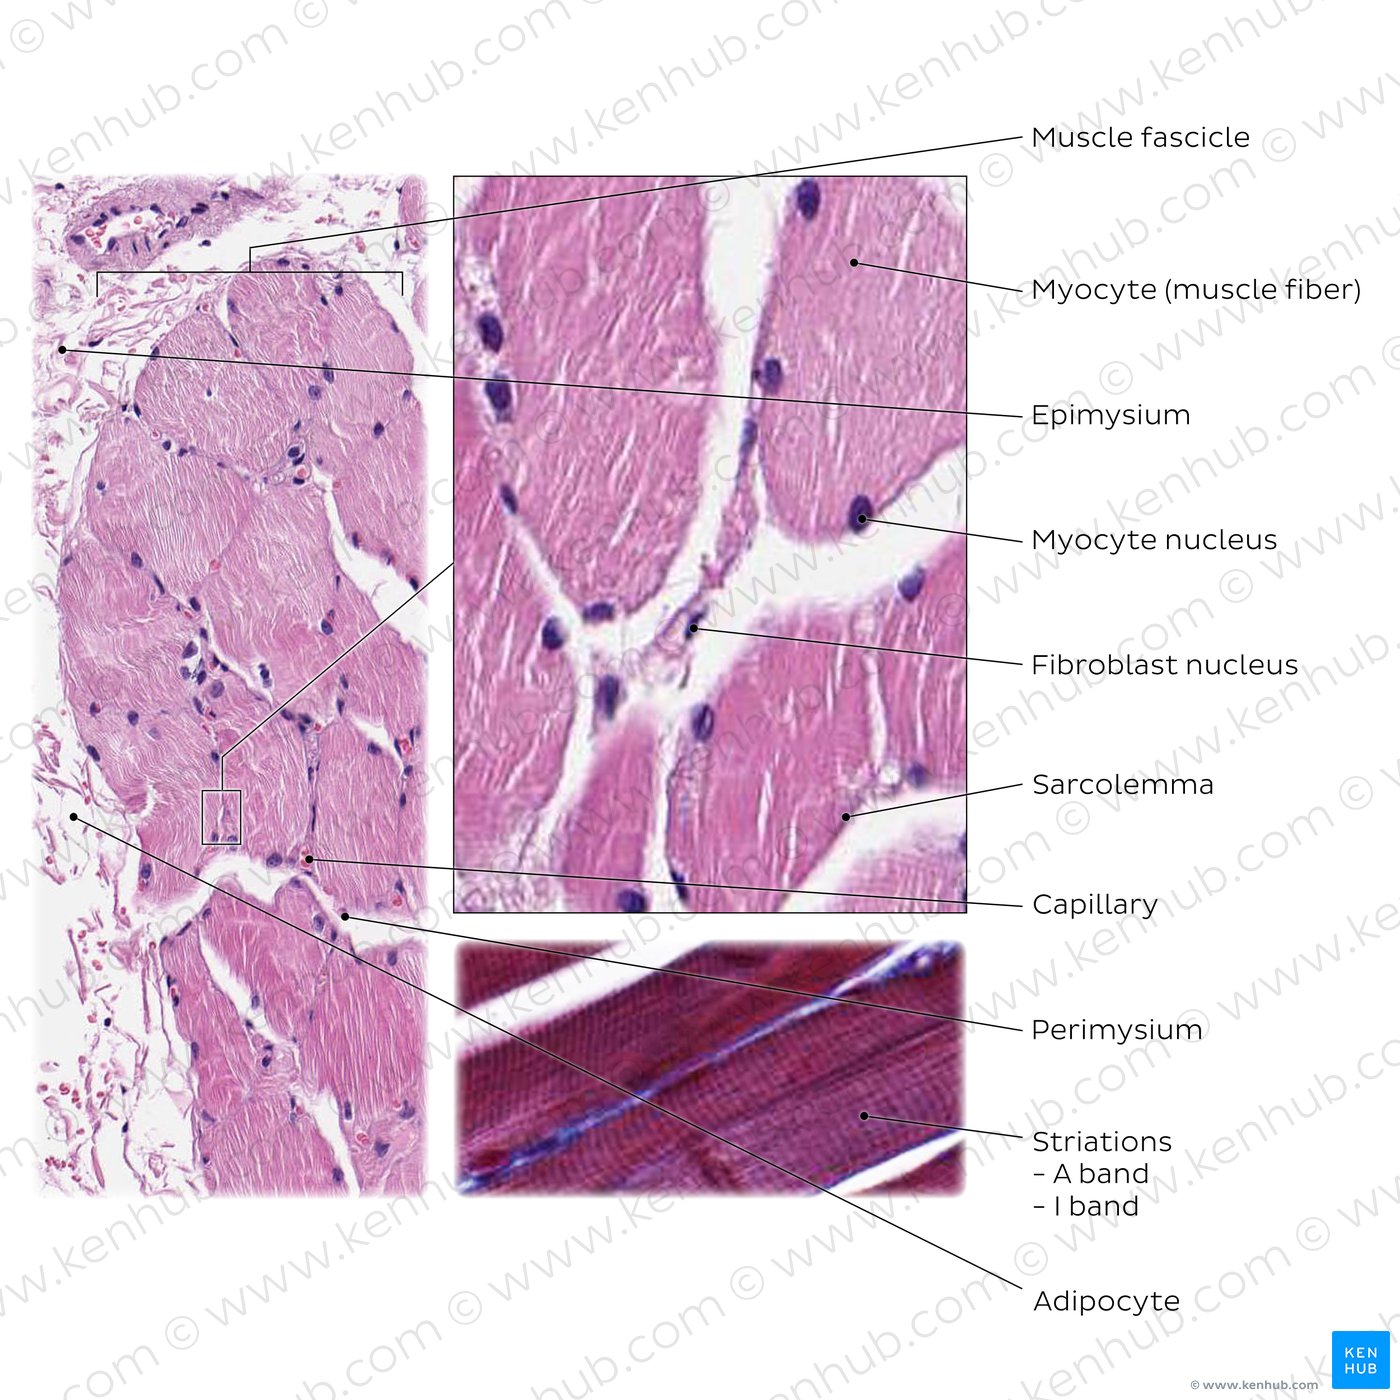 Skeletal muscle tissue